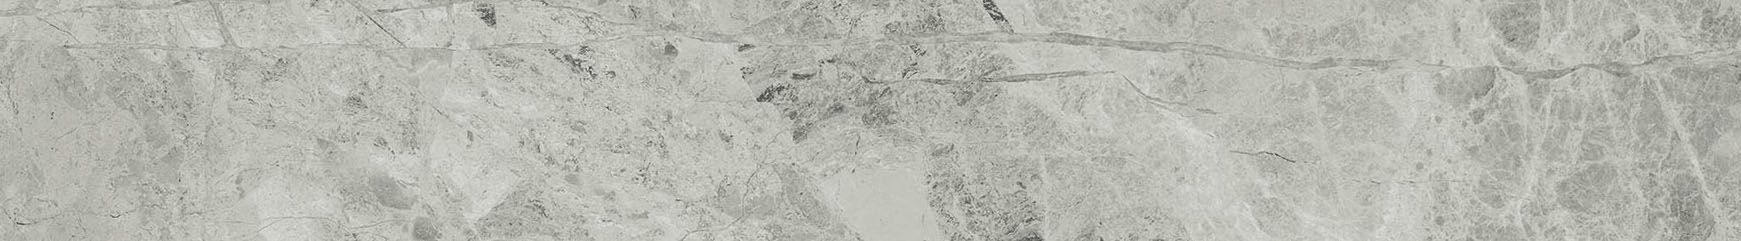 Плитка из керамогранита глянцевая Italon Шарм Экстра 7.2x59 серый (610130002137) плитка из керамогранита глянцевая italon шарм экстра 7 2x59 серый 610130002138